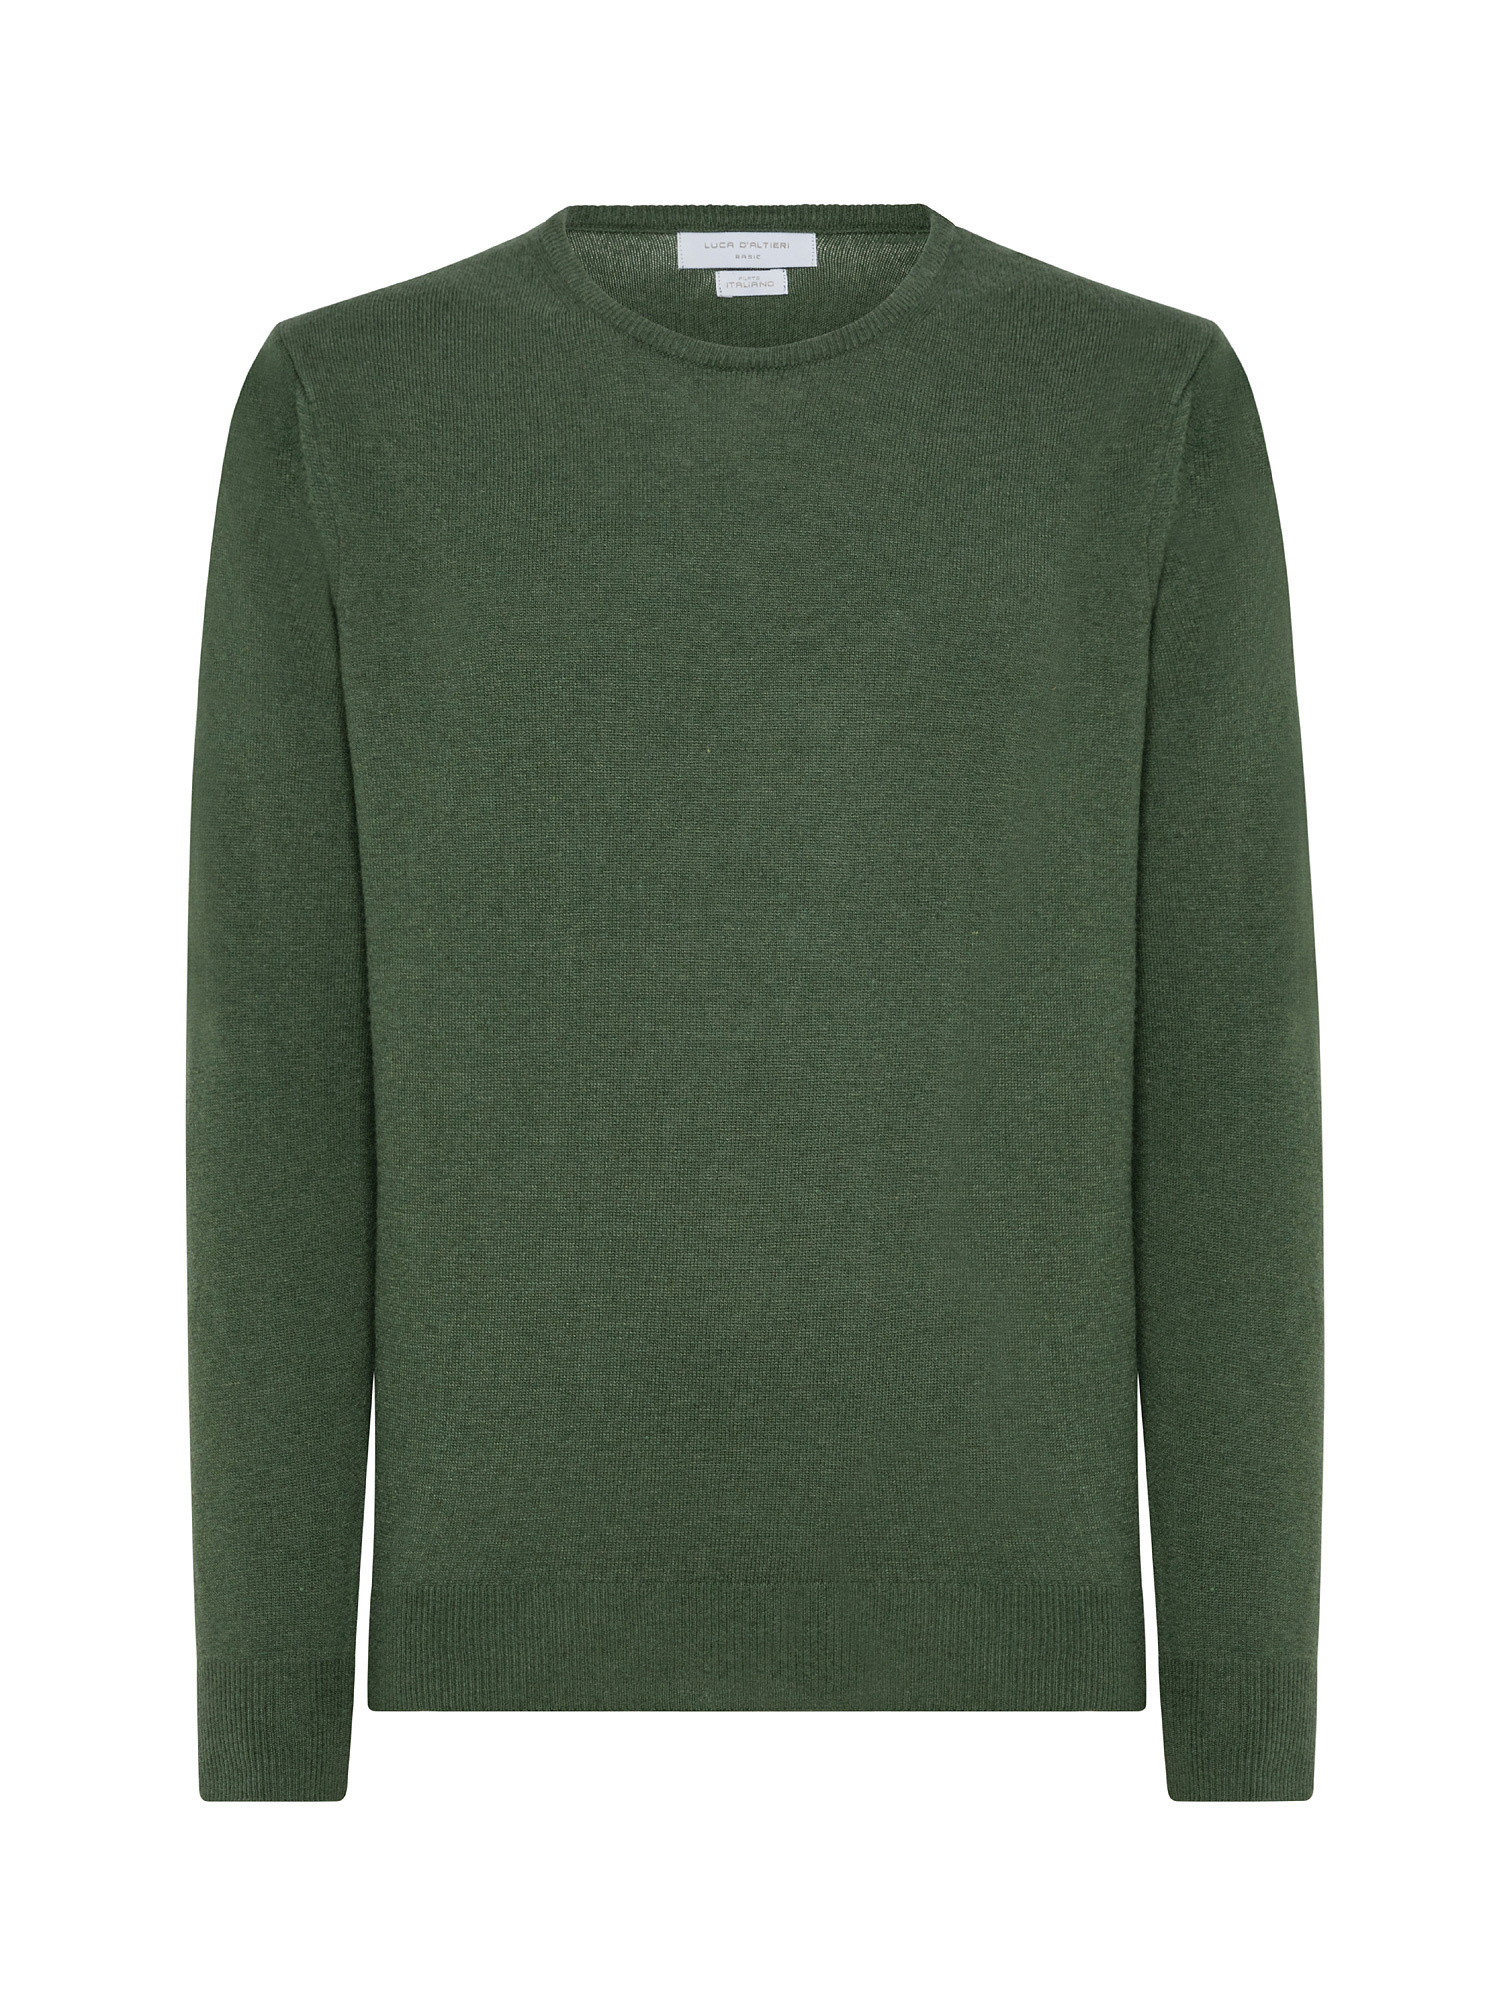 Basic cashmere blend pullover, Green, large image number 0